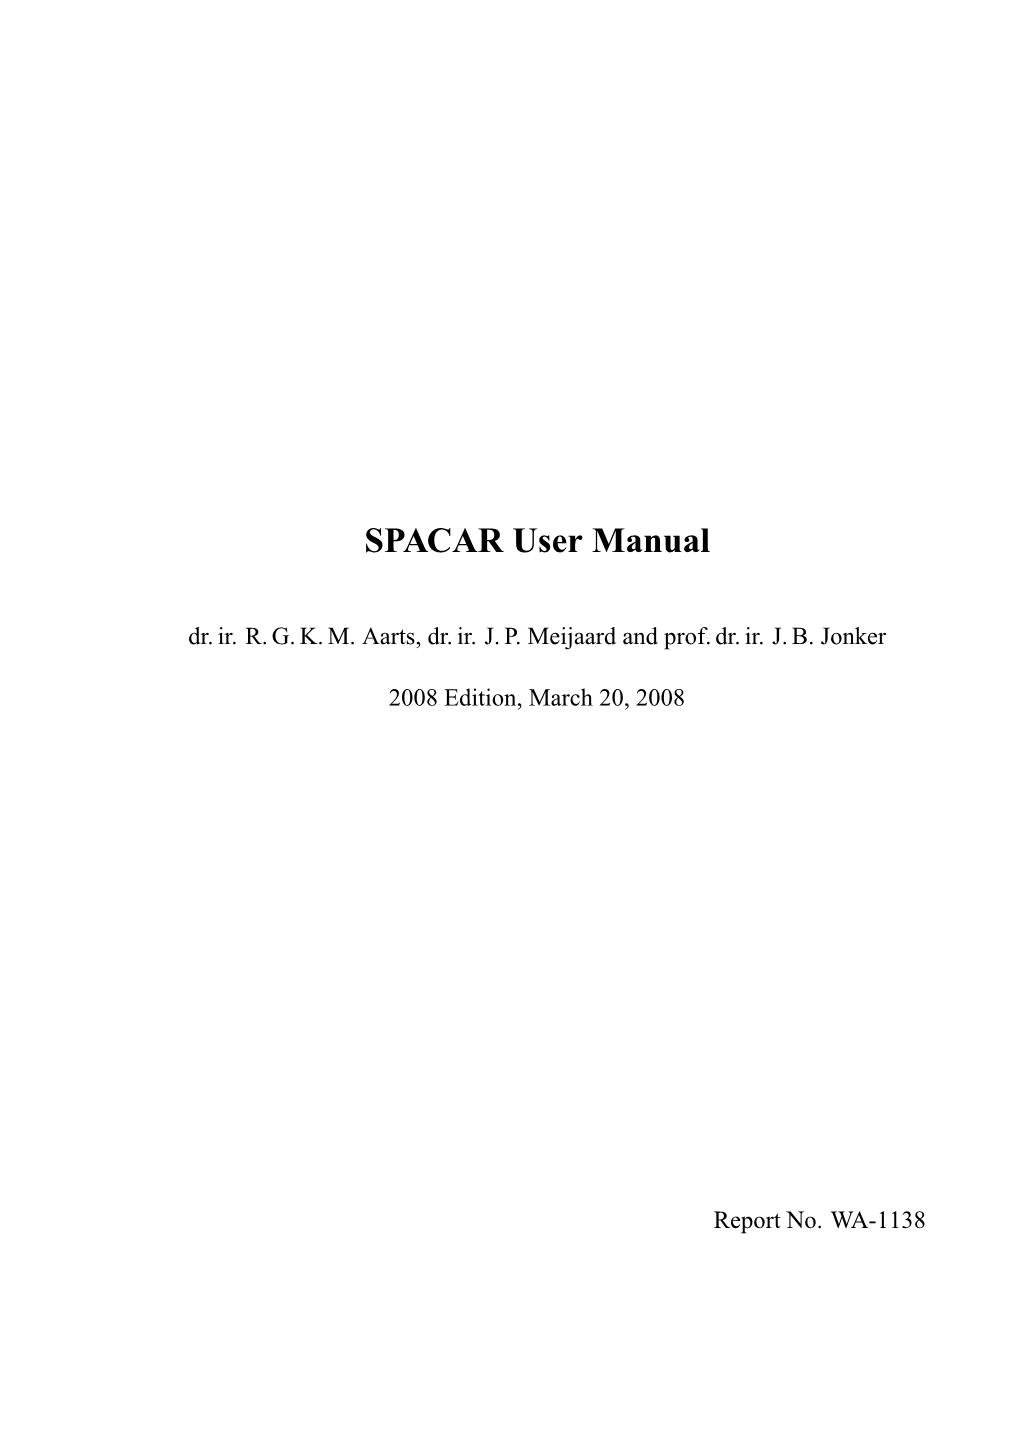 SPACAR User Manual Dr